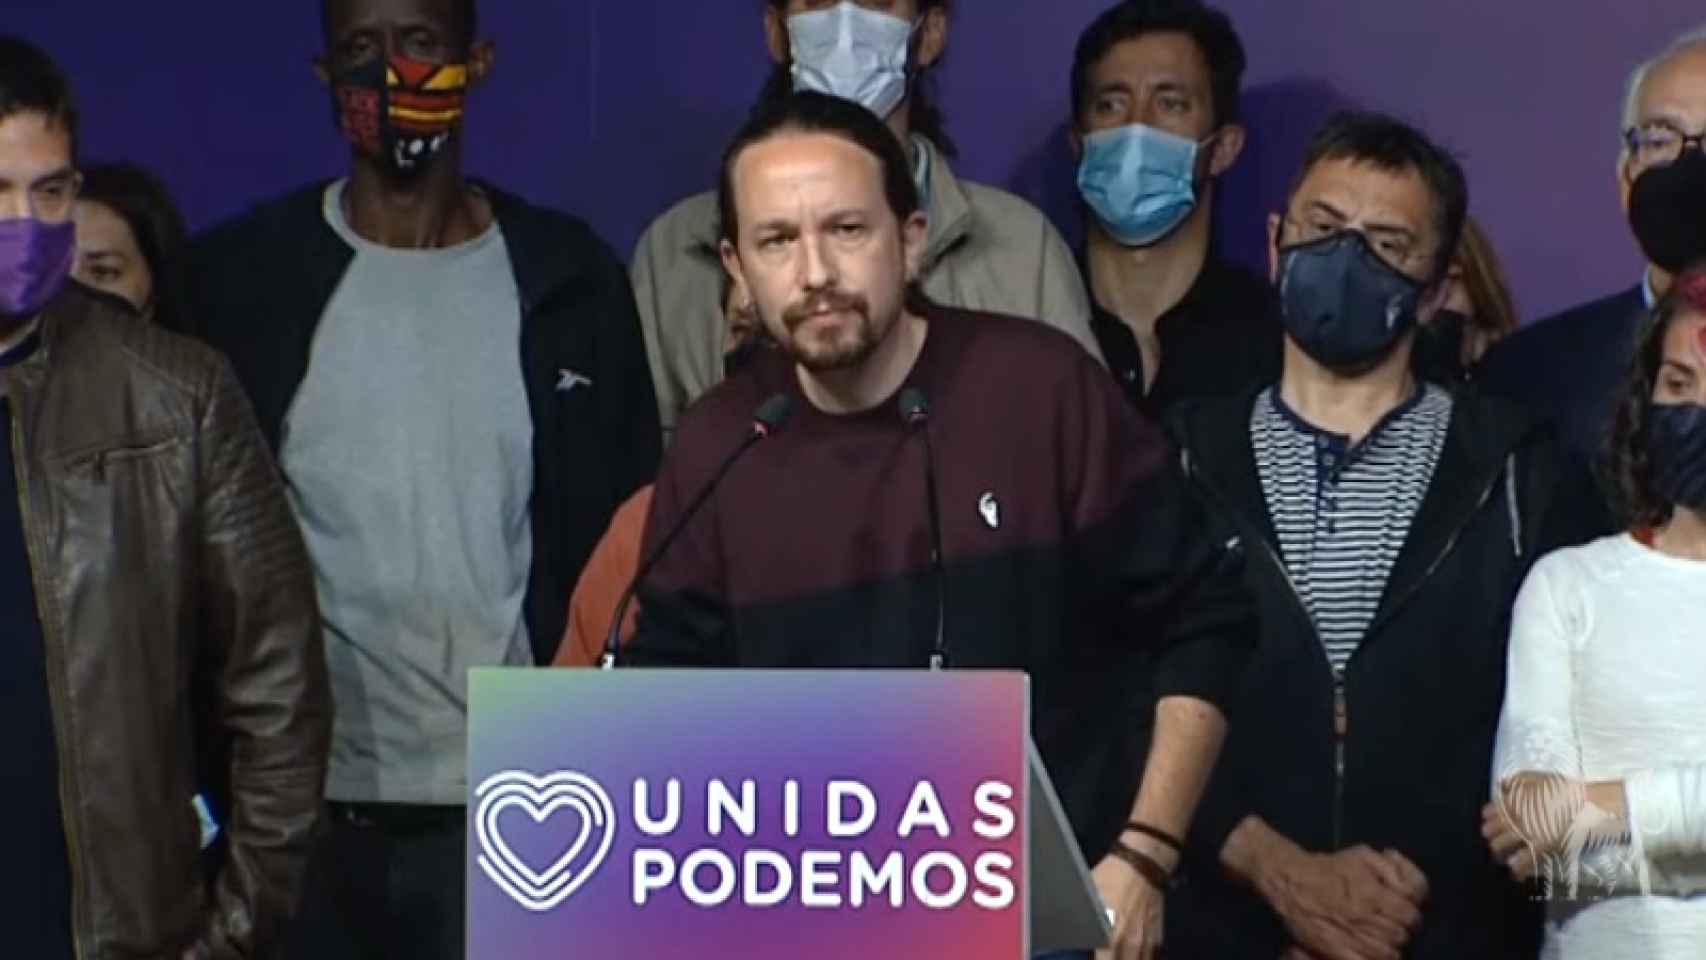 Pablo Iglesias anunciando que abandona la política tras las elecciones en la Comunidad de Madrid.